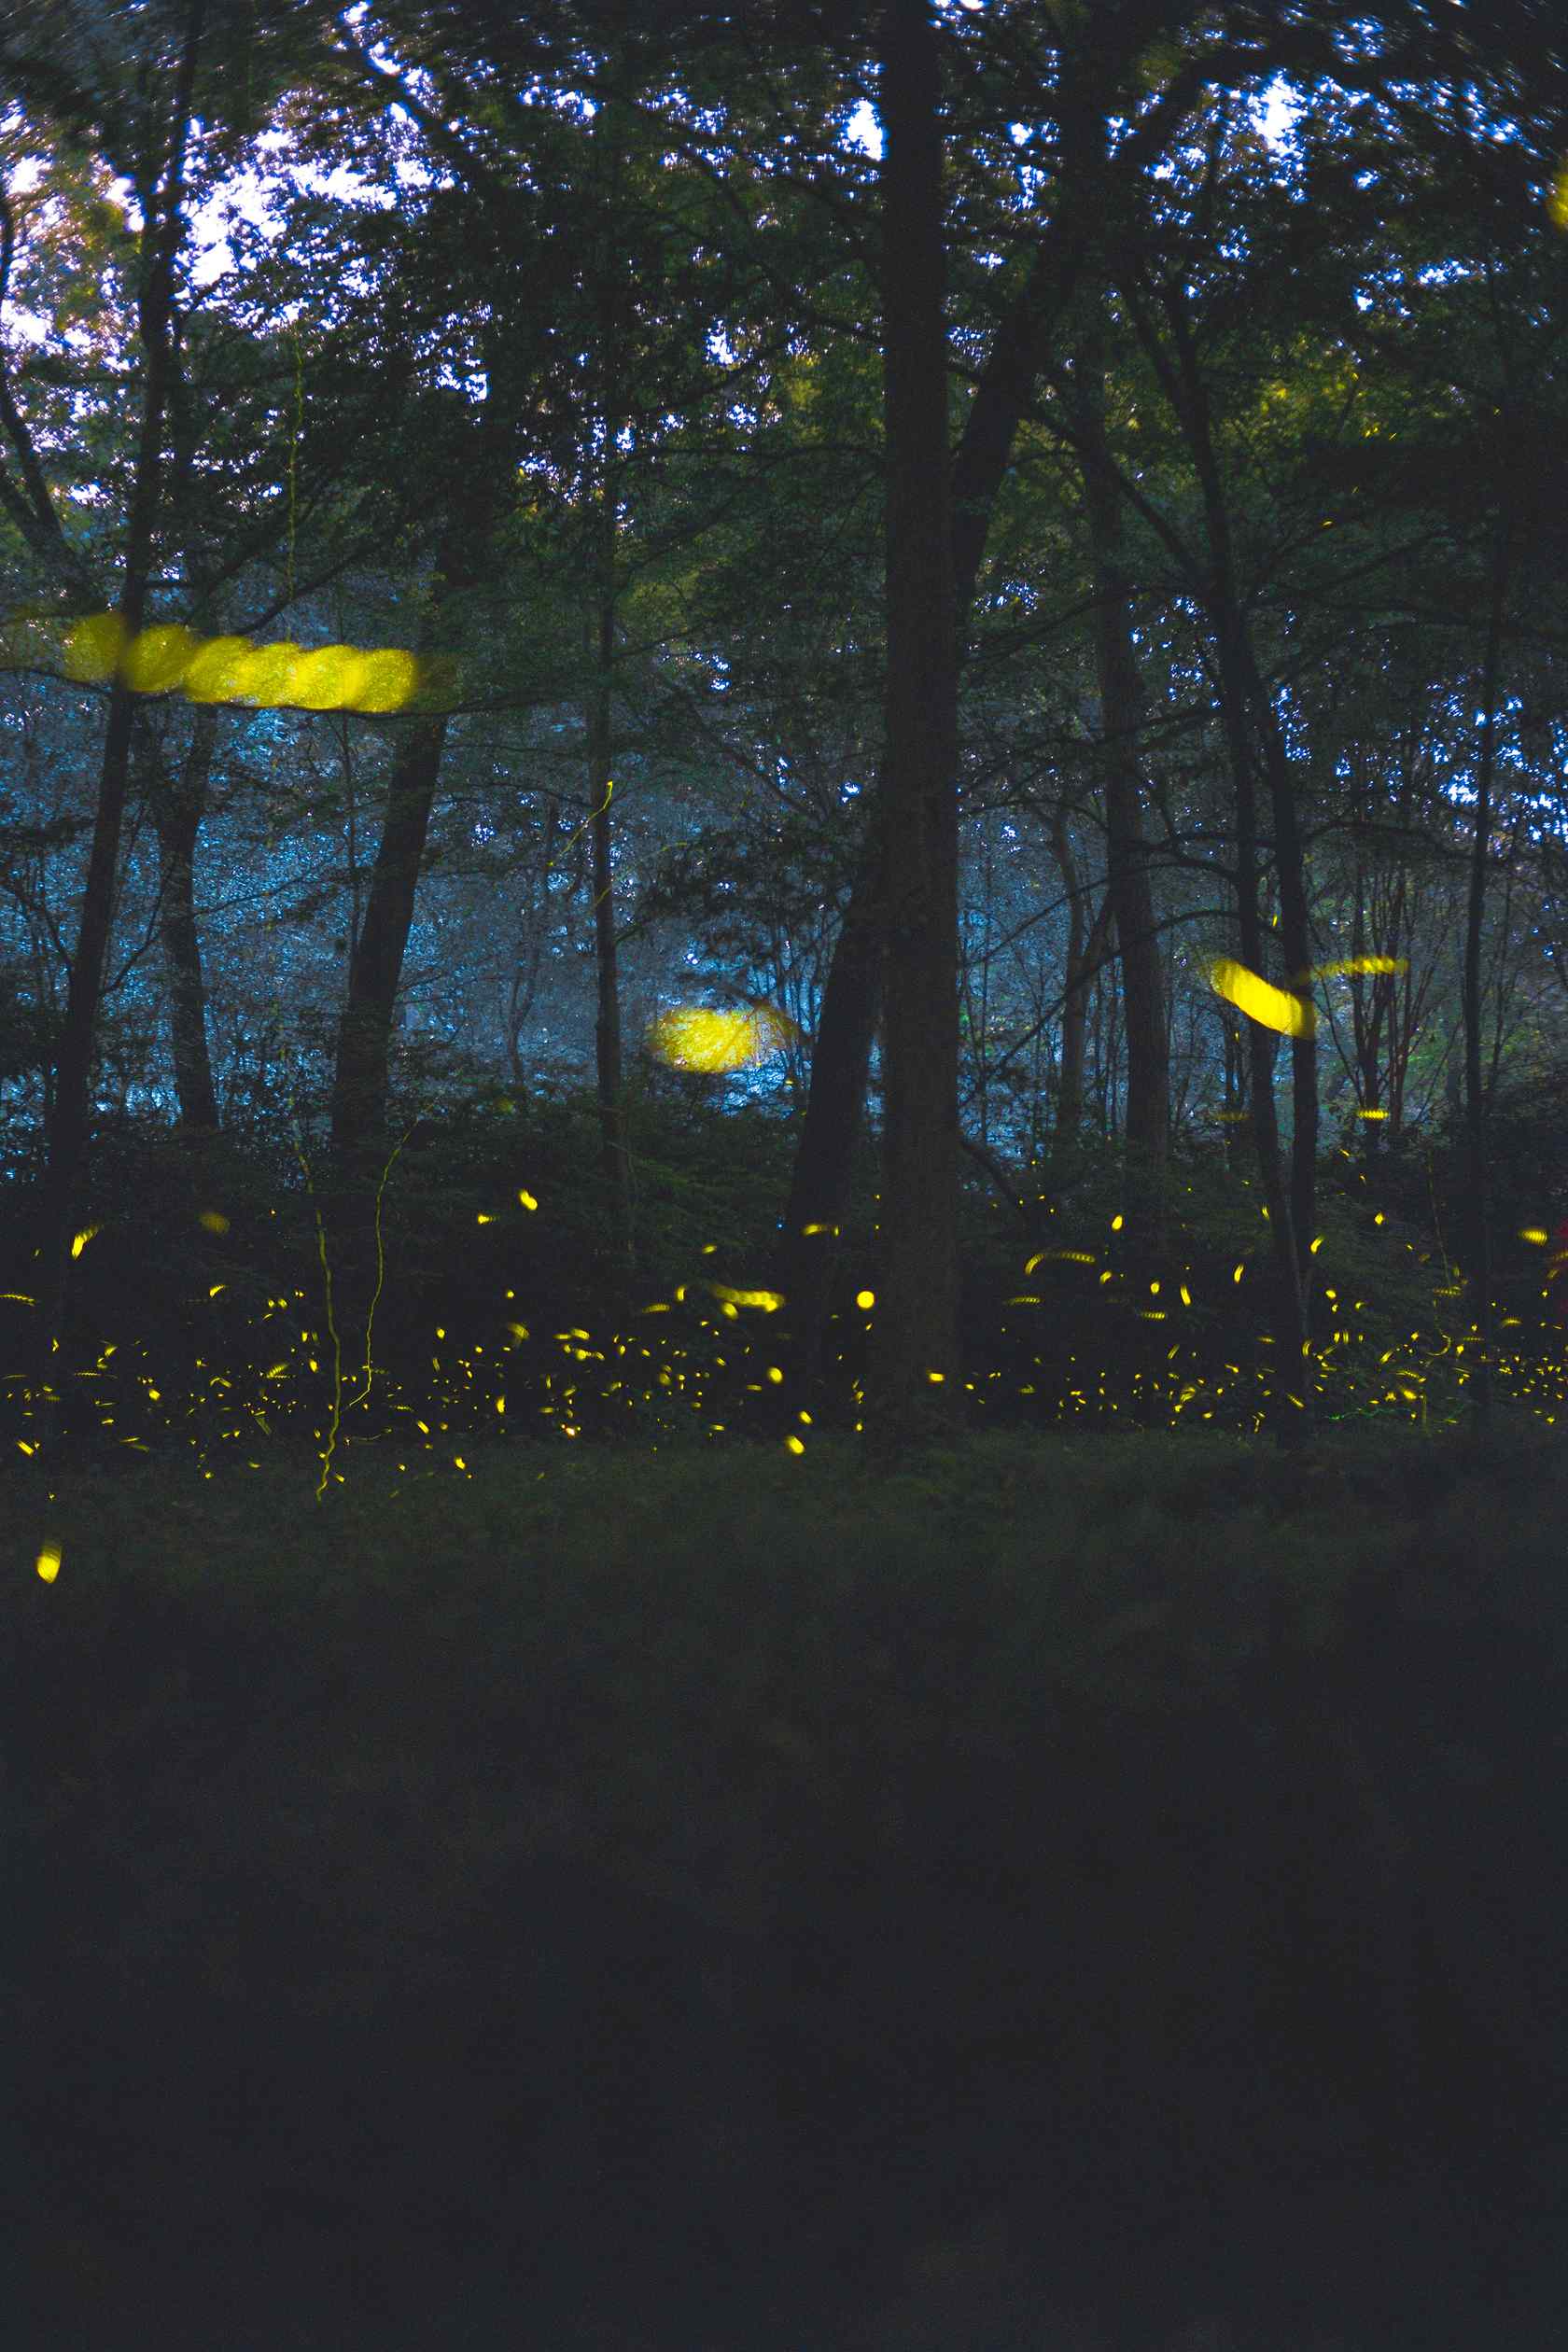 夏夜林间萤火虫手机壁纸图片下载